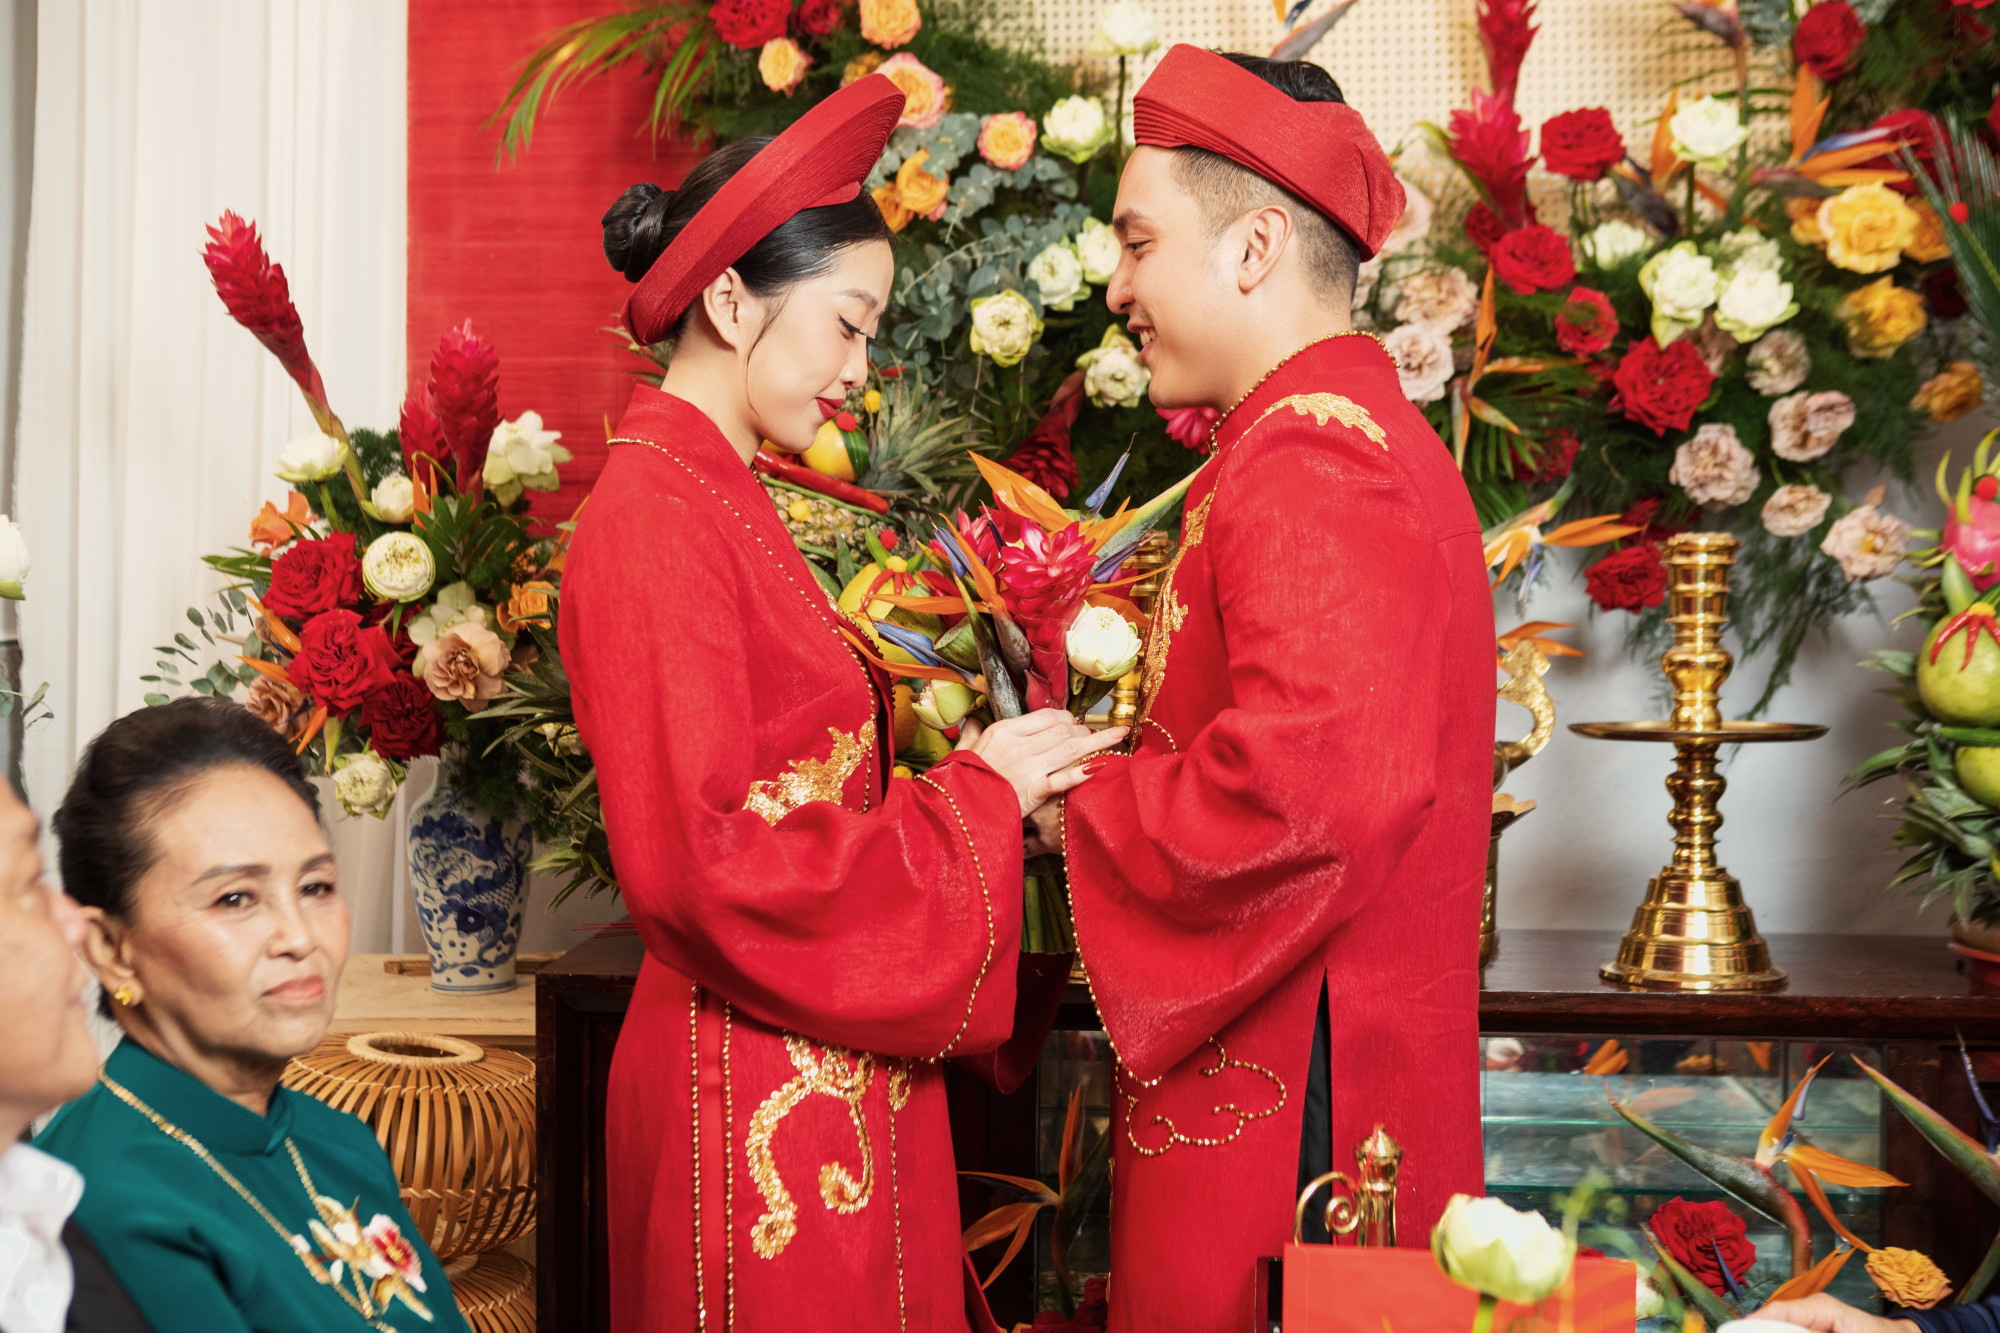 Được biết, trang phục của cô dâu chú rể do đích thân NTK Huỳnh Bảo Toàn may tặng riêng cho 2 vợ chồng. Với điểm nhấn hình ảnh thêu Long Phụng quen thuộc cùng sắc đỏ tượng trung cho điềm may mắn, biểu tượng hạnh phúc càng giúp cặp đôi nổi bật trong ngày.